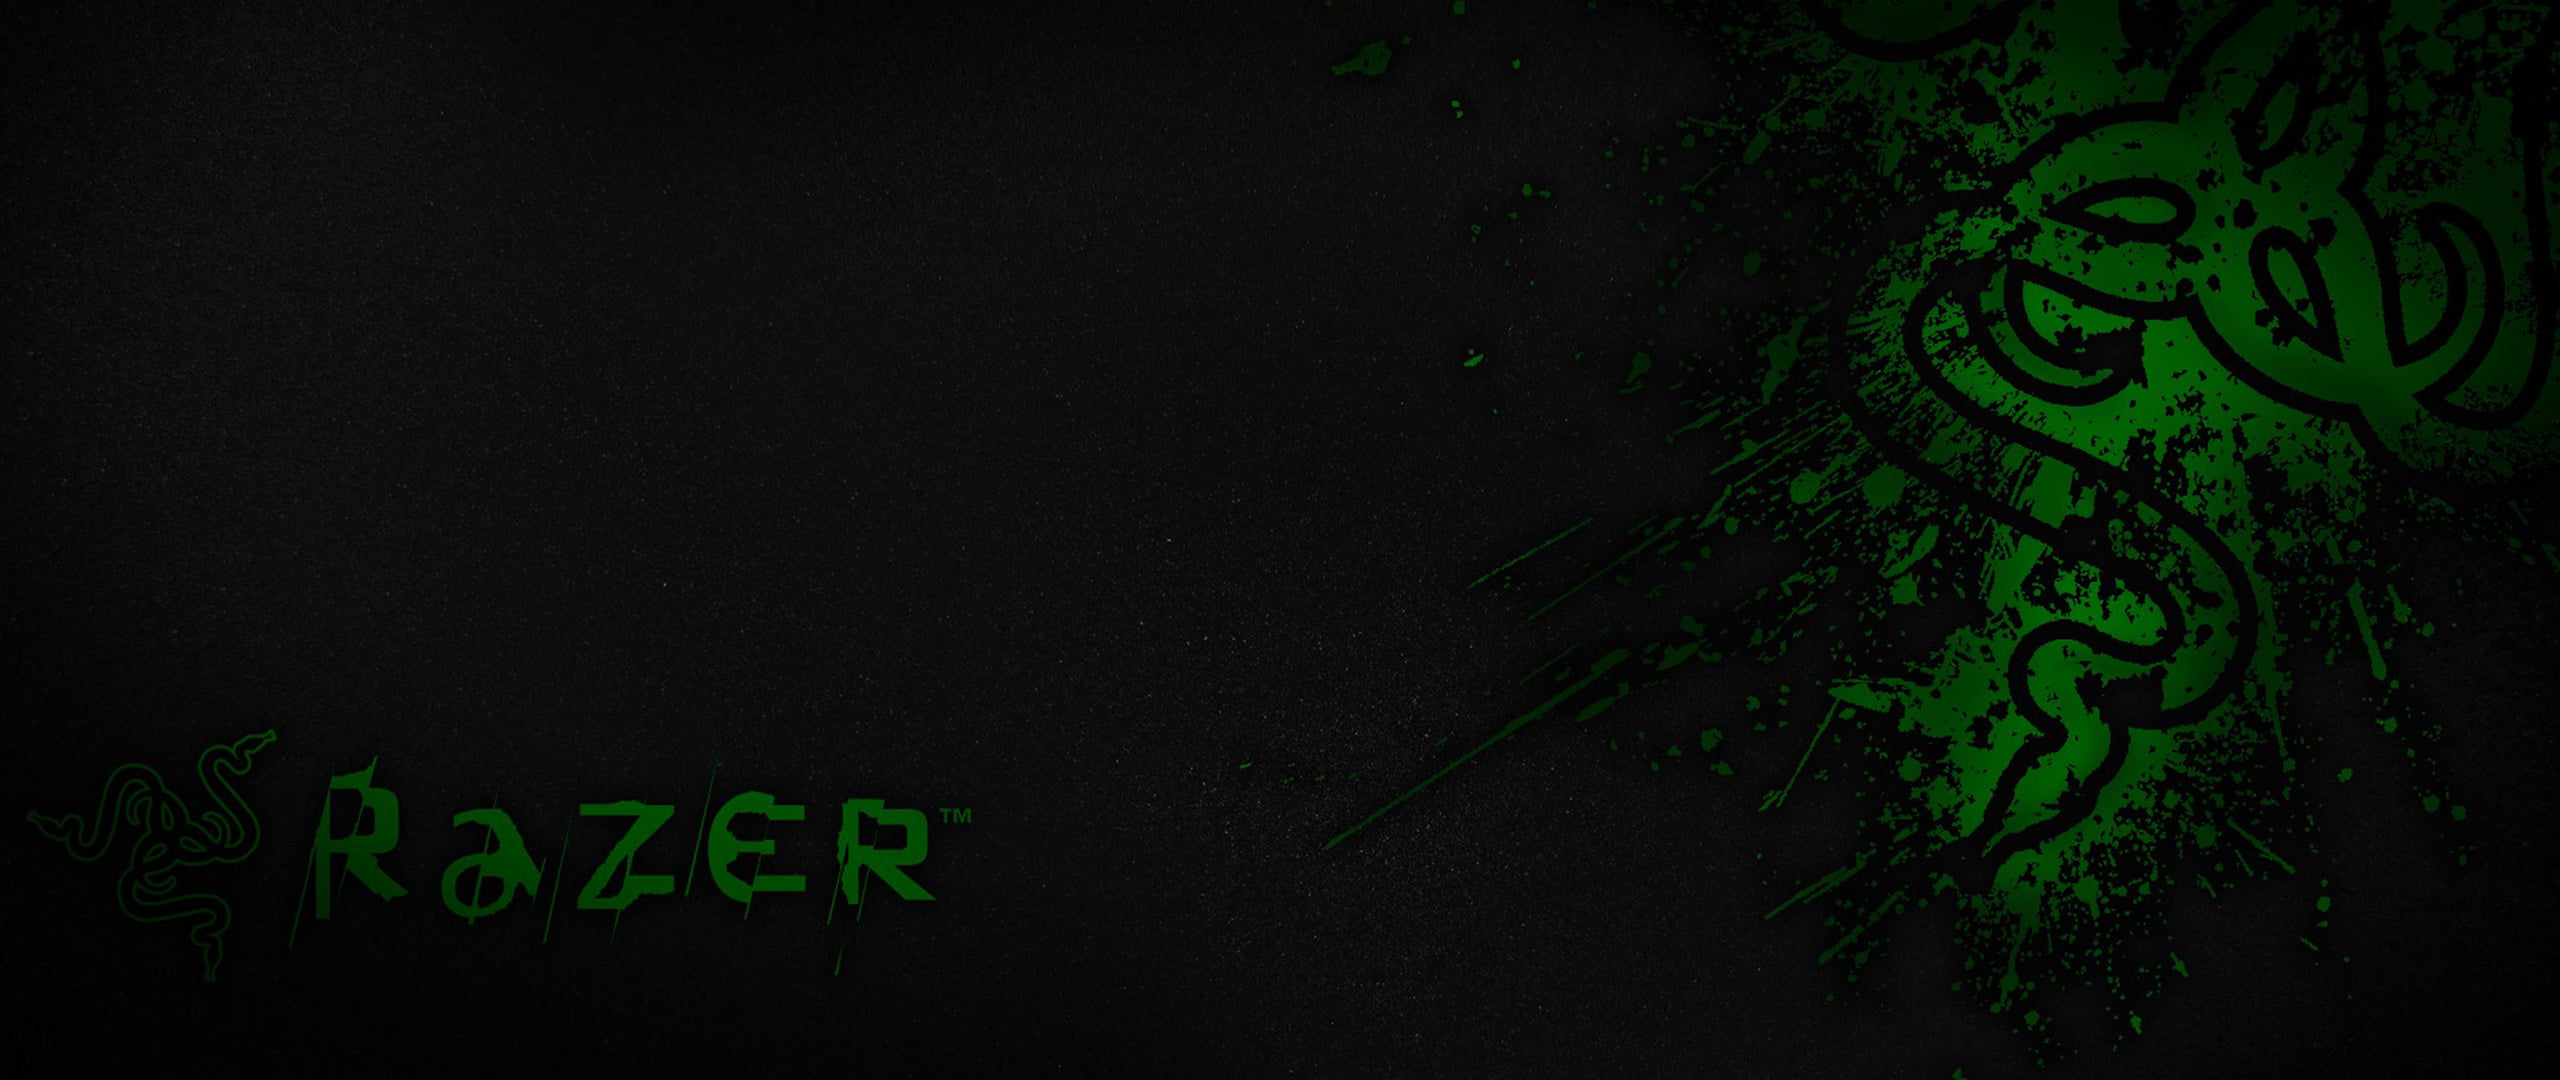 Razer Inc. là một thương hiệu nổi tiếng trong làng gaming với các sản phẩm chất lượng và lợi ích khách hàng tốt. Hãy cùng xem ảnh và khám phá các sản phẩm độc đáo của Razer như chuột, bàn phím, tai nghe,... để trải nghiệm game tốt hơn.